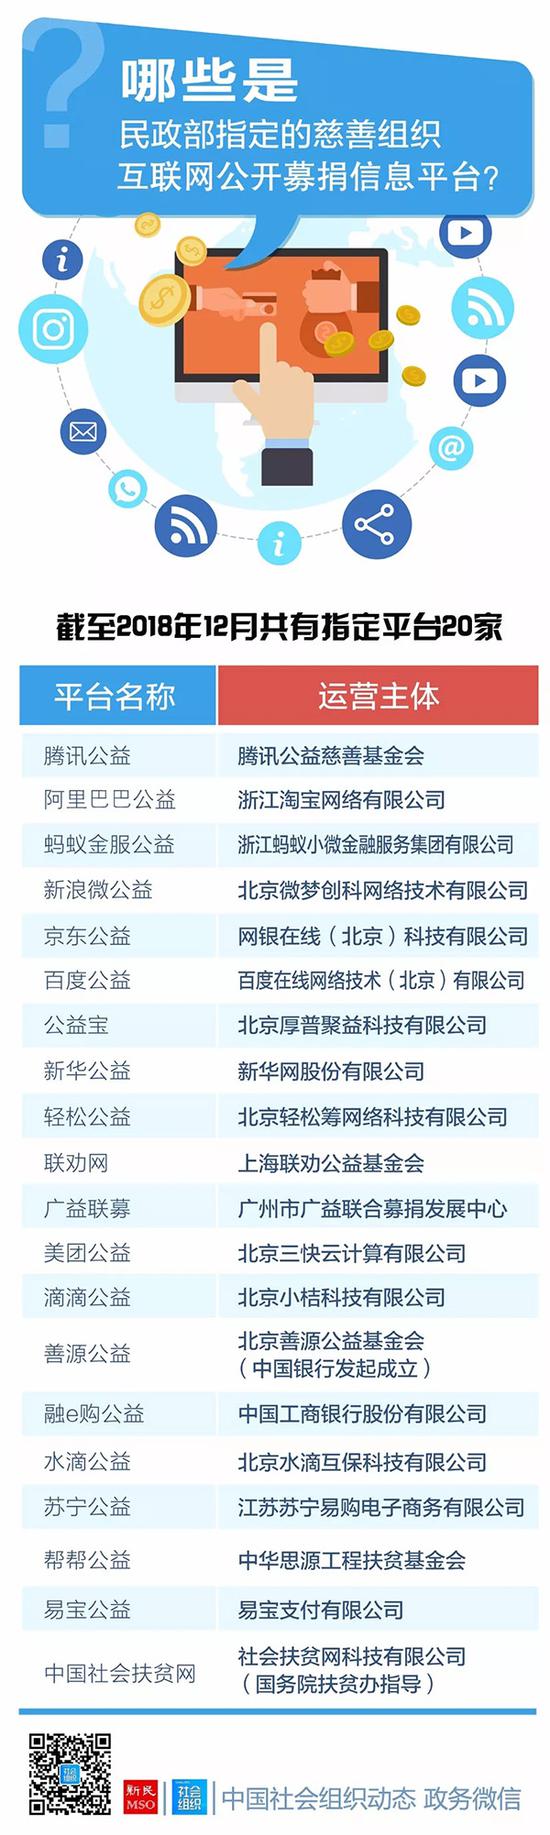 中国社会组织动态微信公众号 图